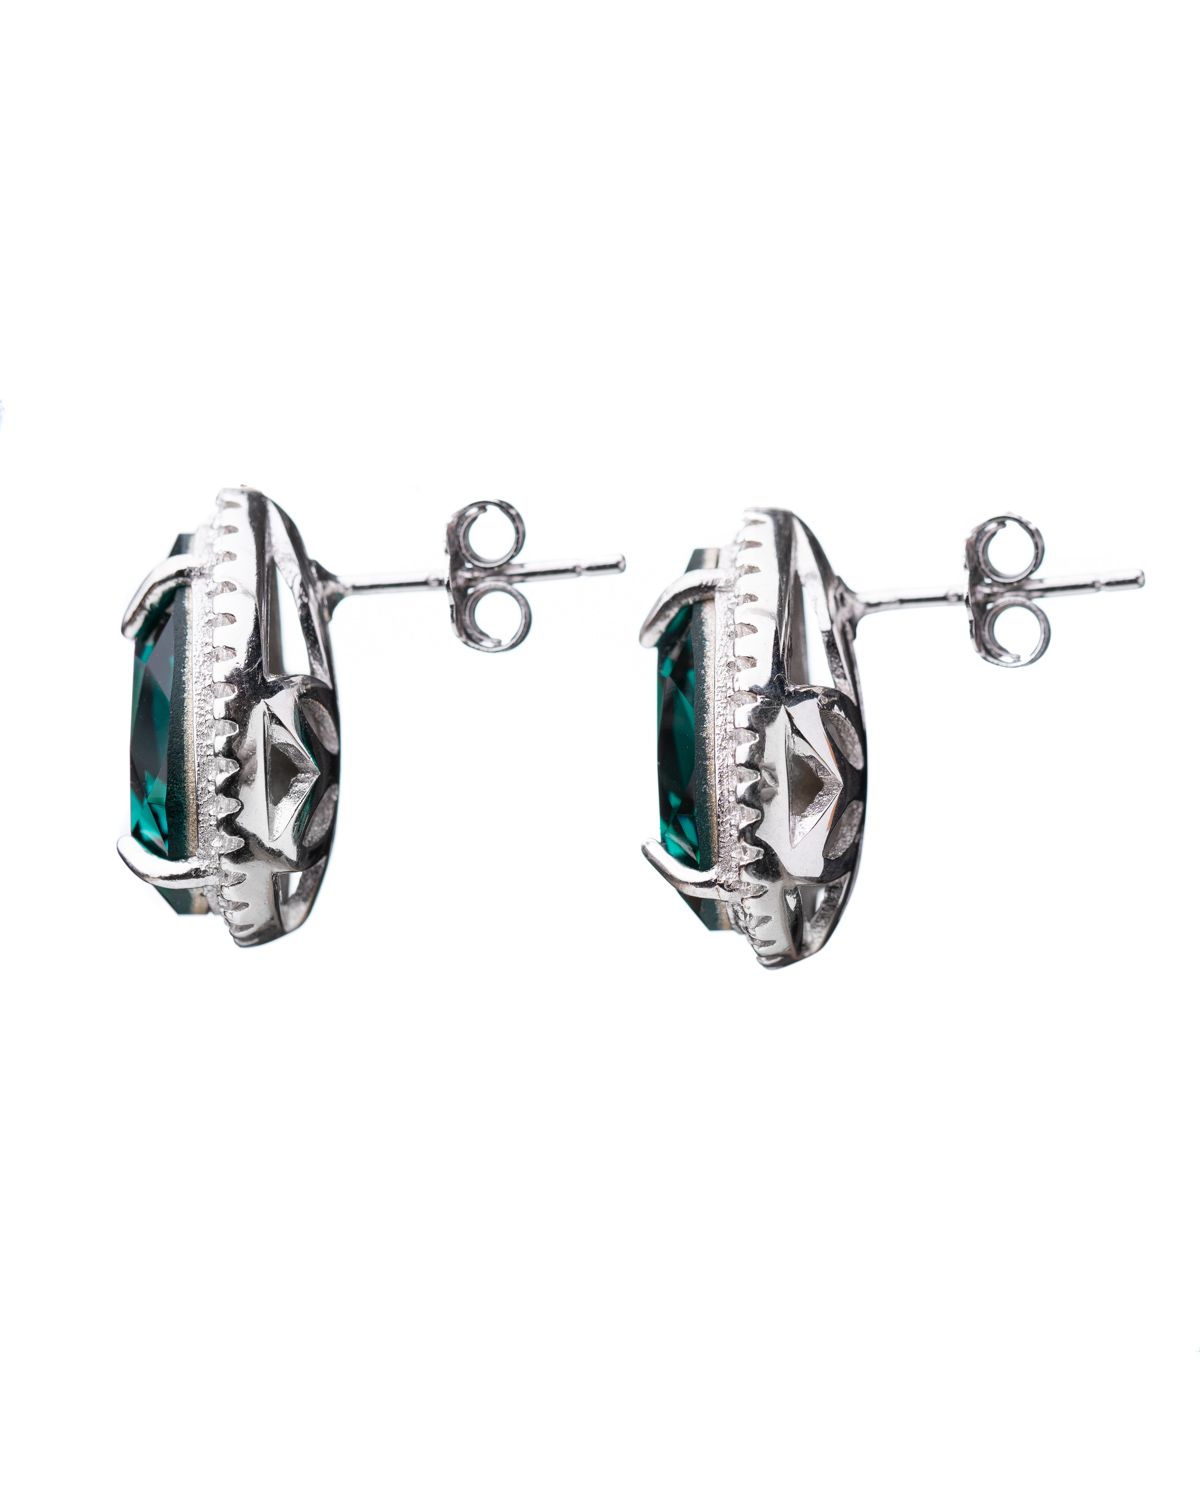 Emerald Pear Crystal Earrings close